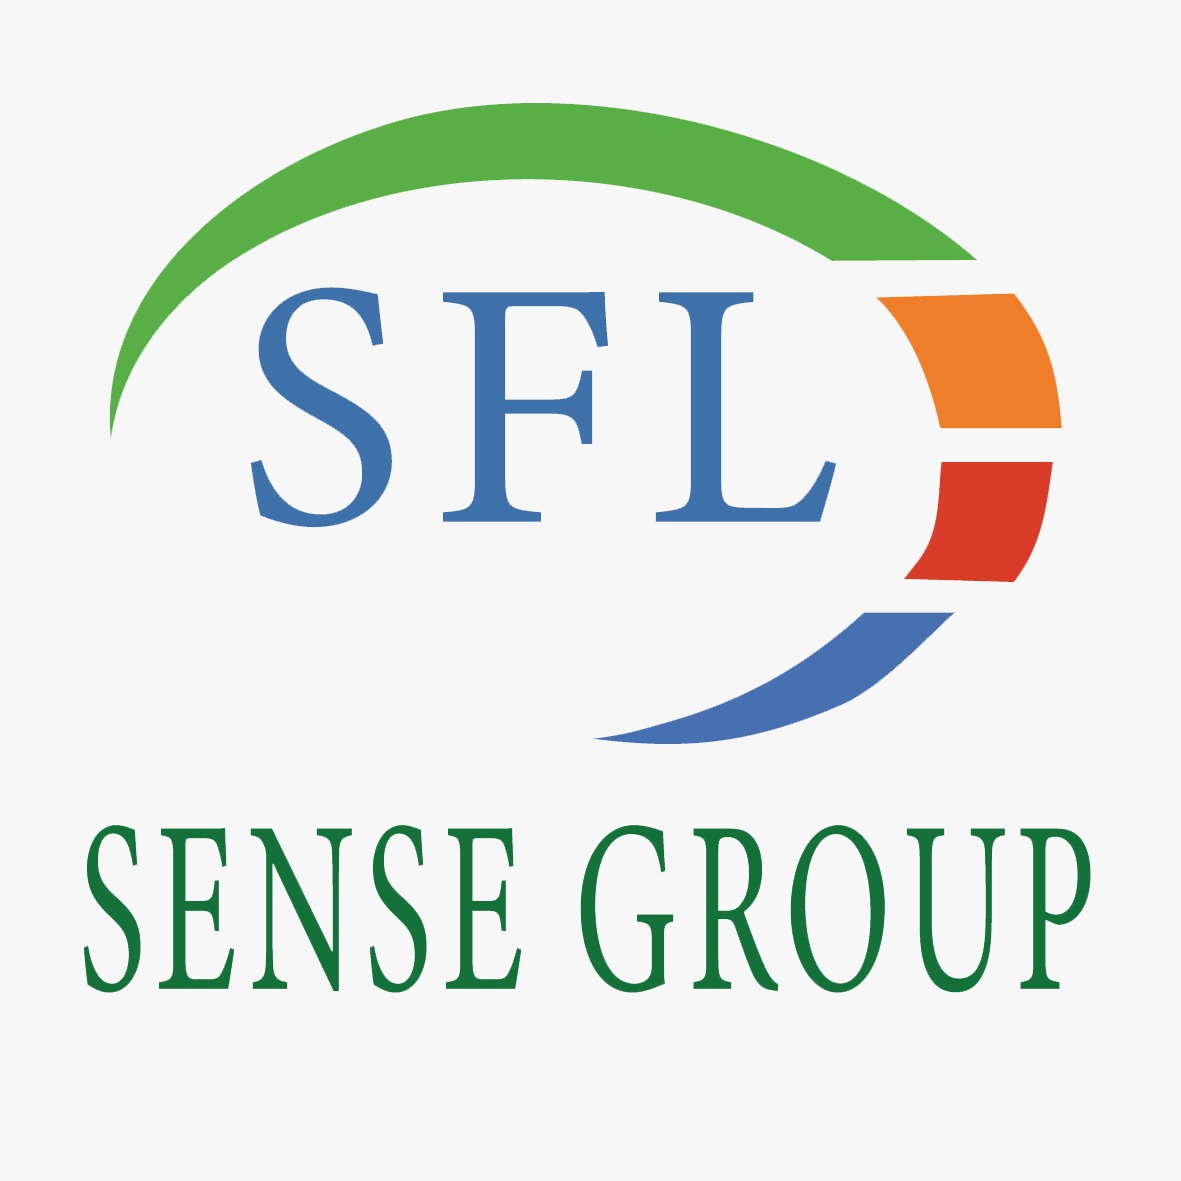 Sense Group